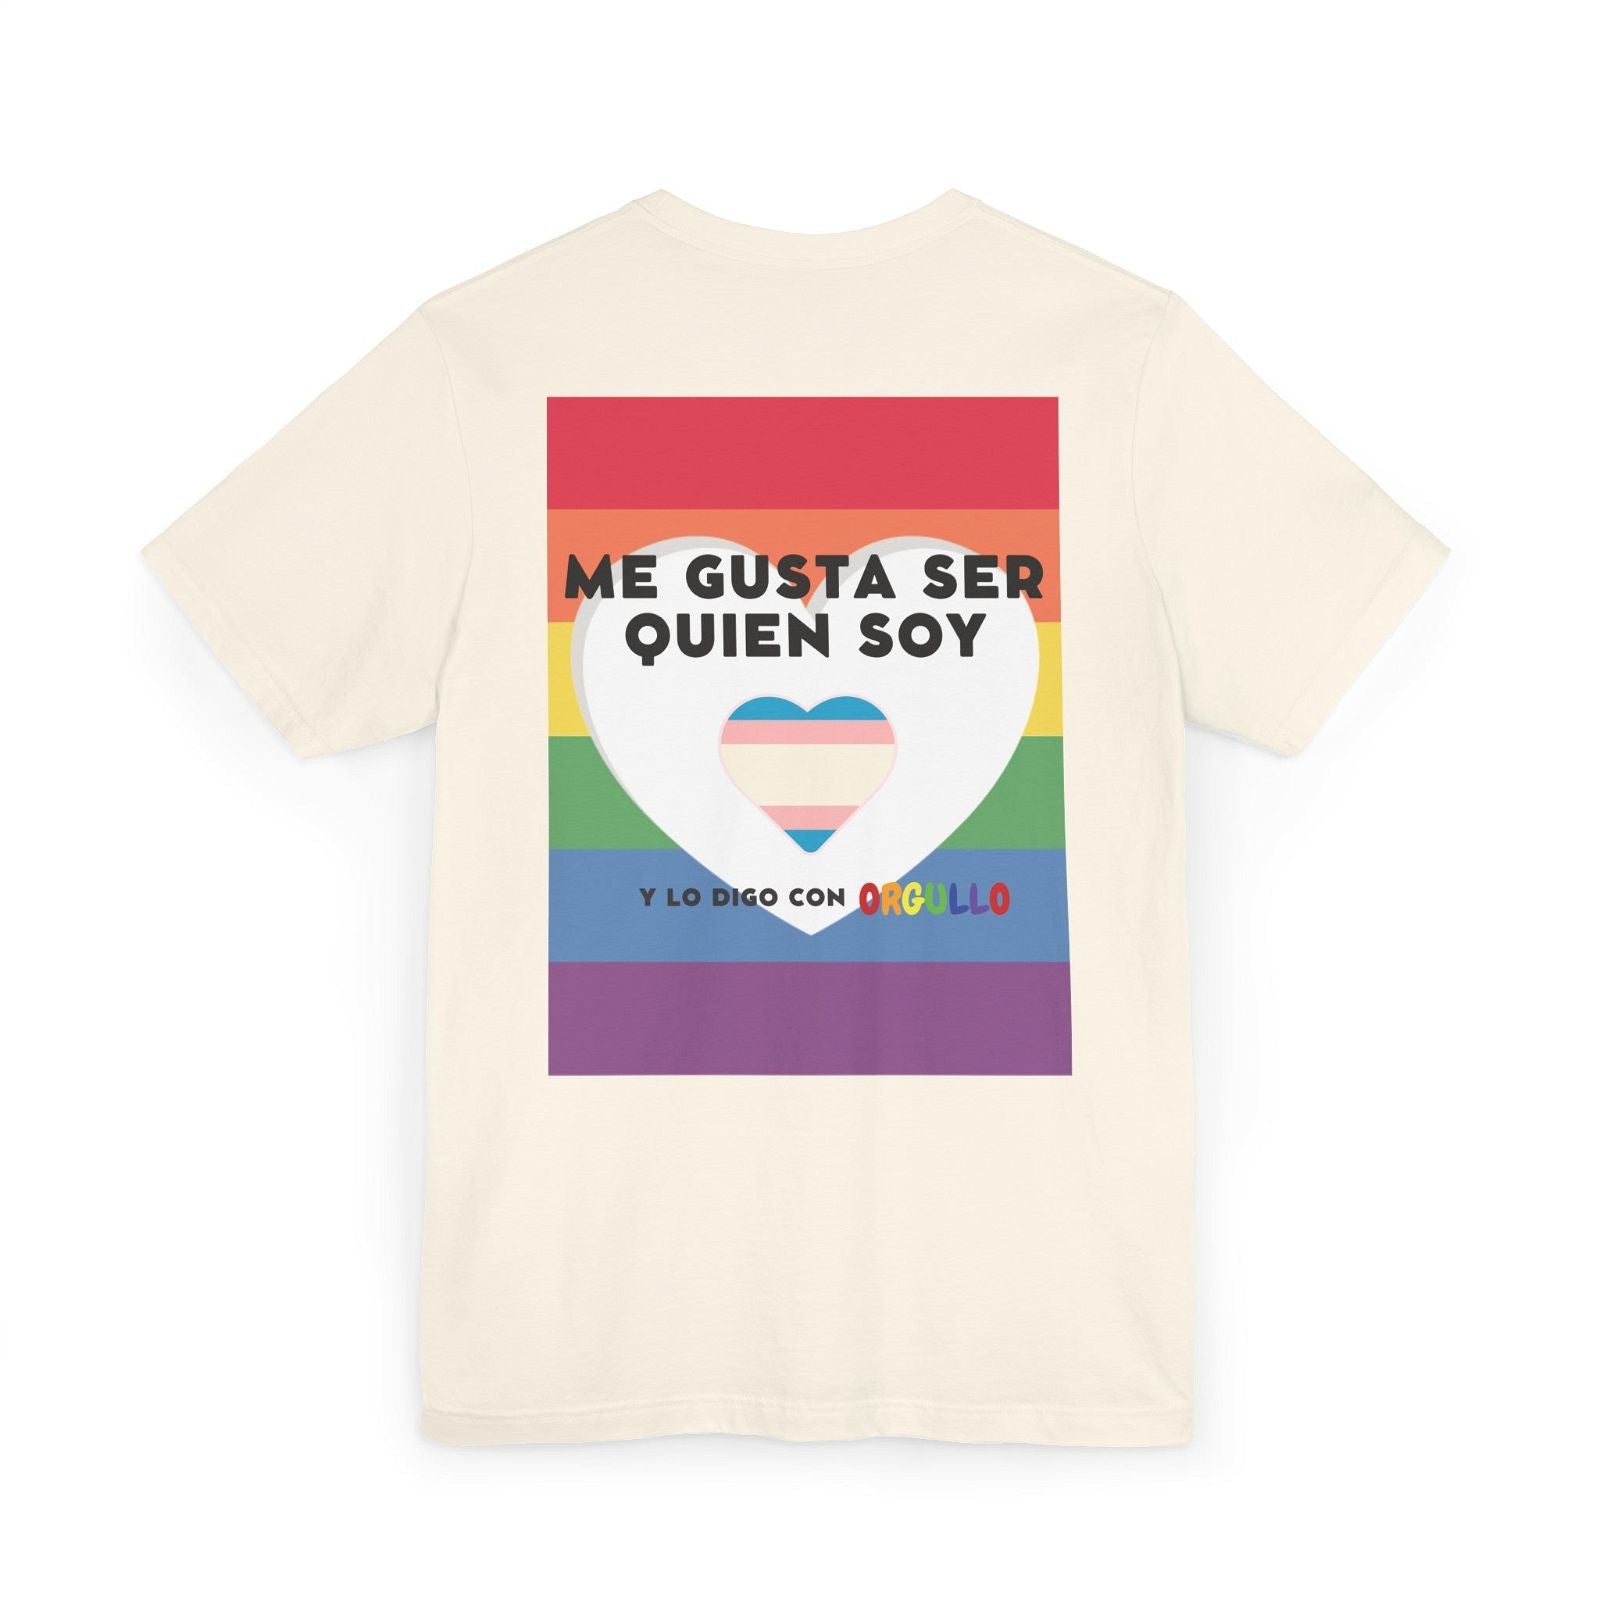 🏳️‍🌈 Me gusta ser quién soy y lo digo con orgullo 🏳️‍⚧️ - Pride Month - ❤ LOVE IS LOVE ❤ - Unisex T-Shirts Jerseys - Alex's Store -  - 